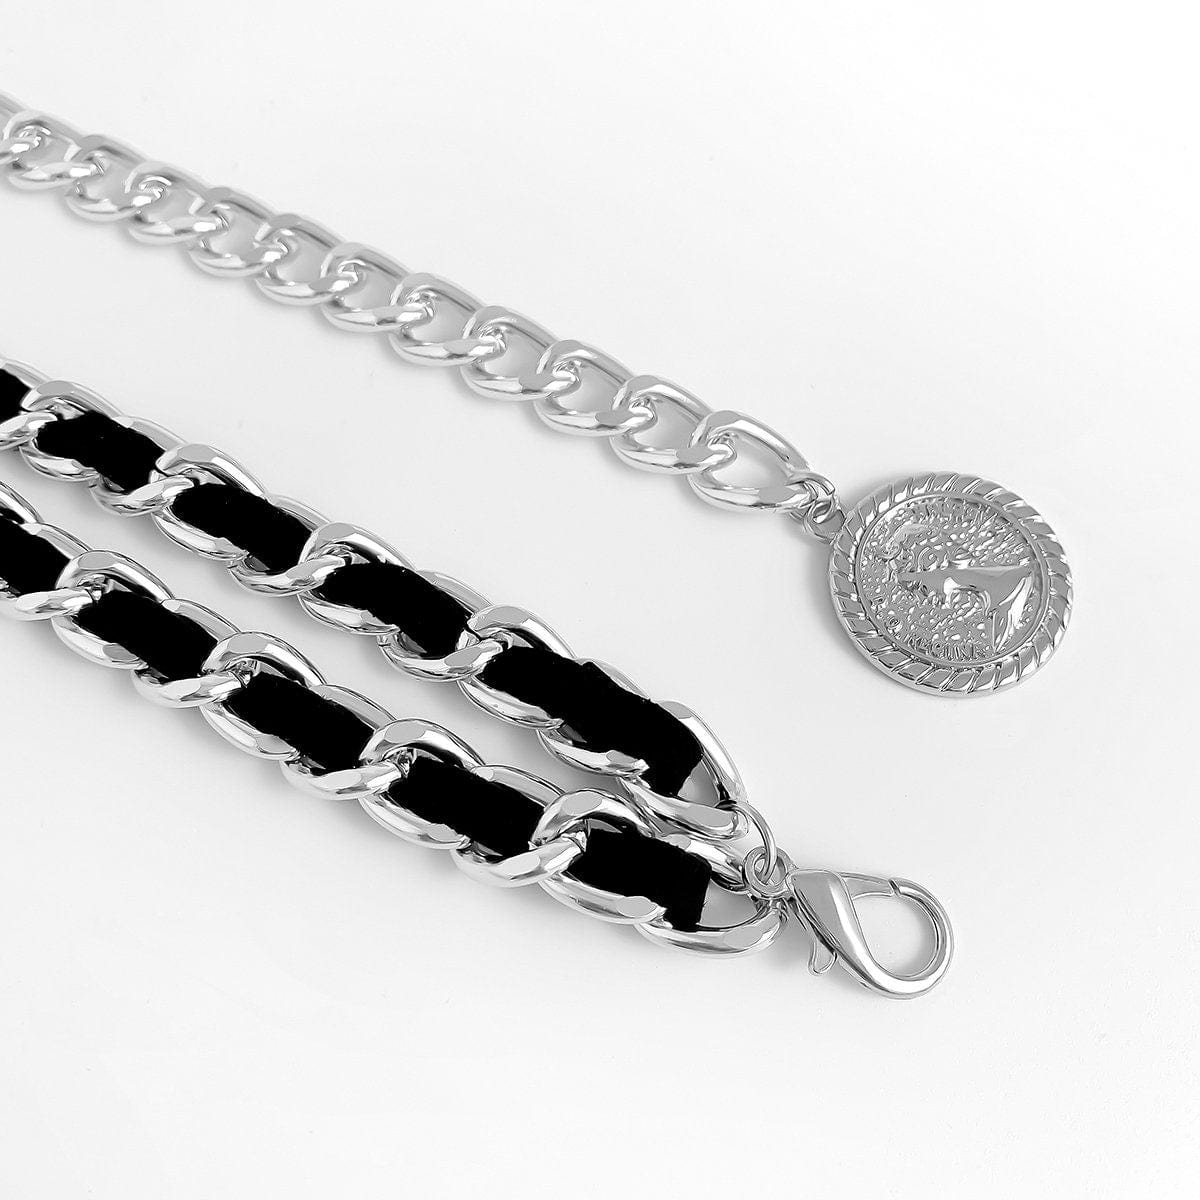 Chic Velvet Interwoven Waist Chain | Relief Coin Pendant Belly Chain | Trendy Layered Body Chain - ArtGalleryZen